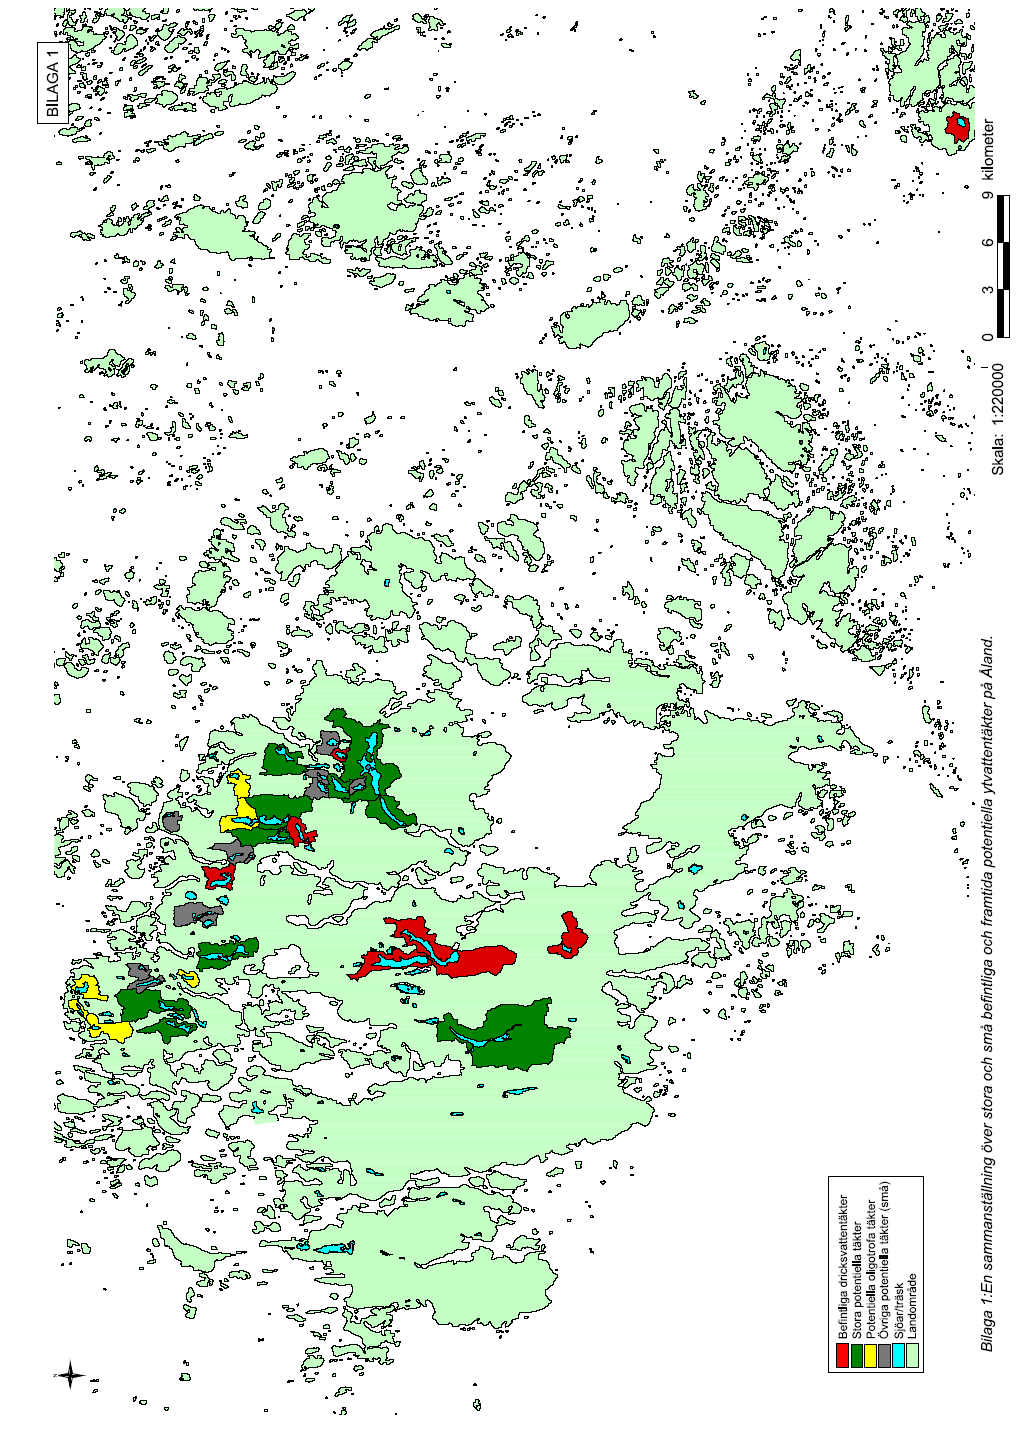 Figur 12. Ytvattentäkter med tillrinningsområden på Åland. Källa: Miljöbyrån, landskapsregeringen.